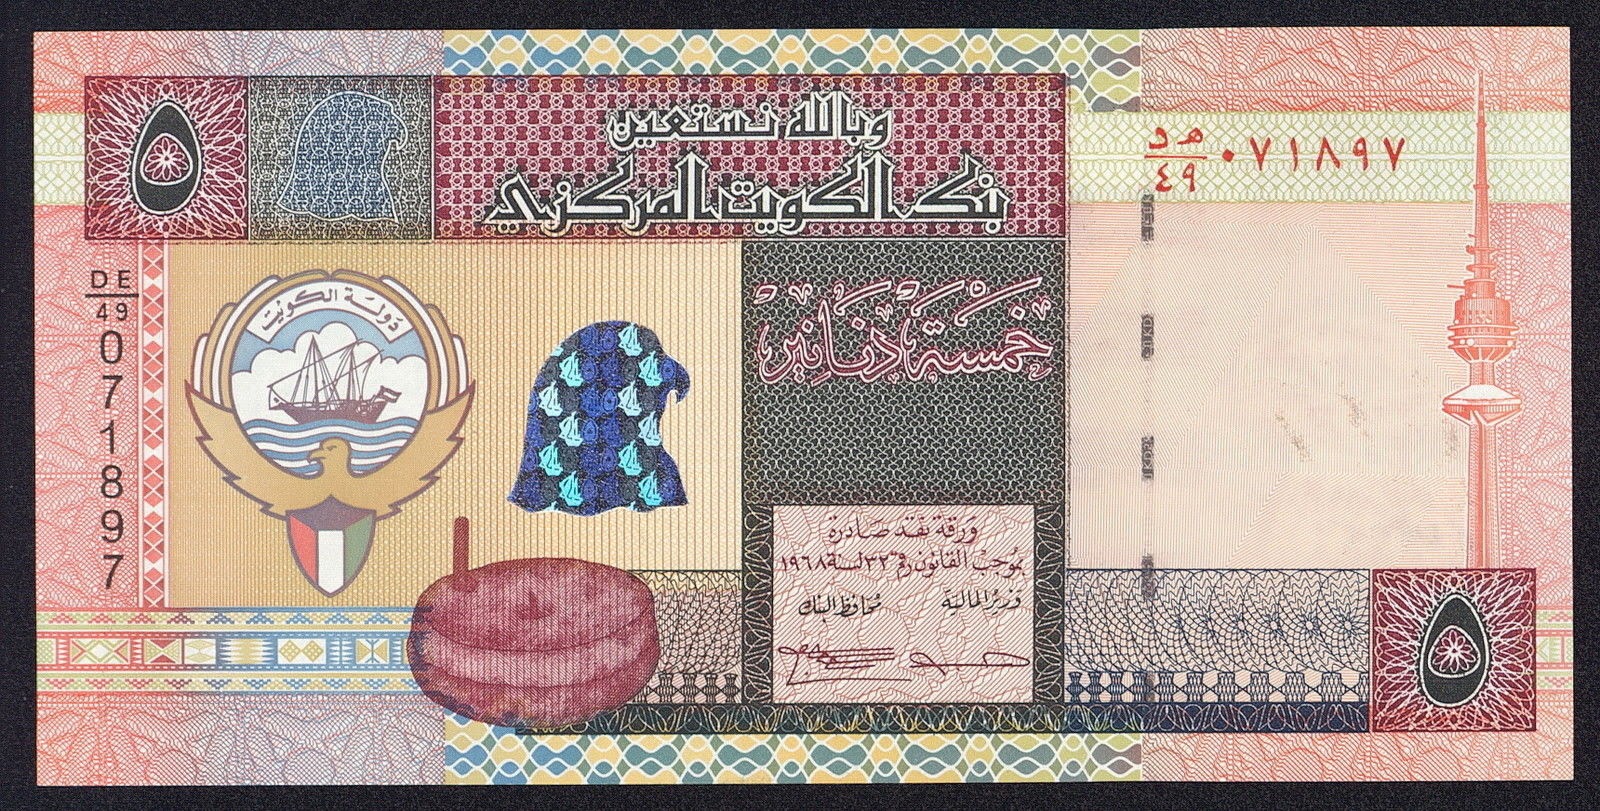 Kuwait money 5 Kuwaiti Dinar banknote 1994